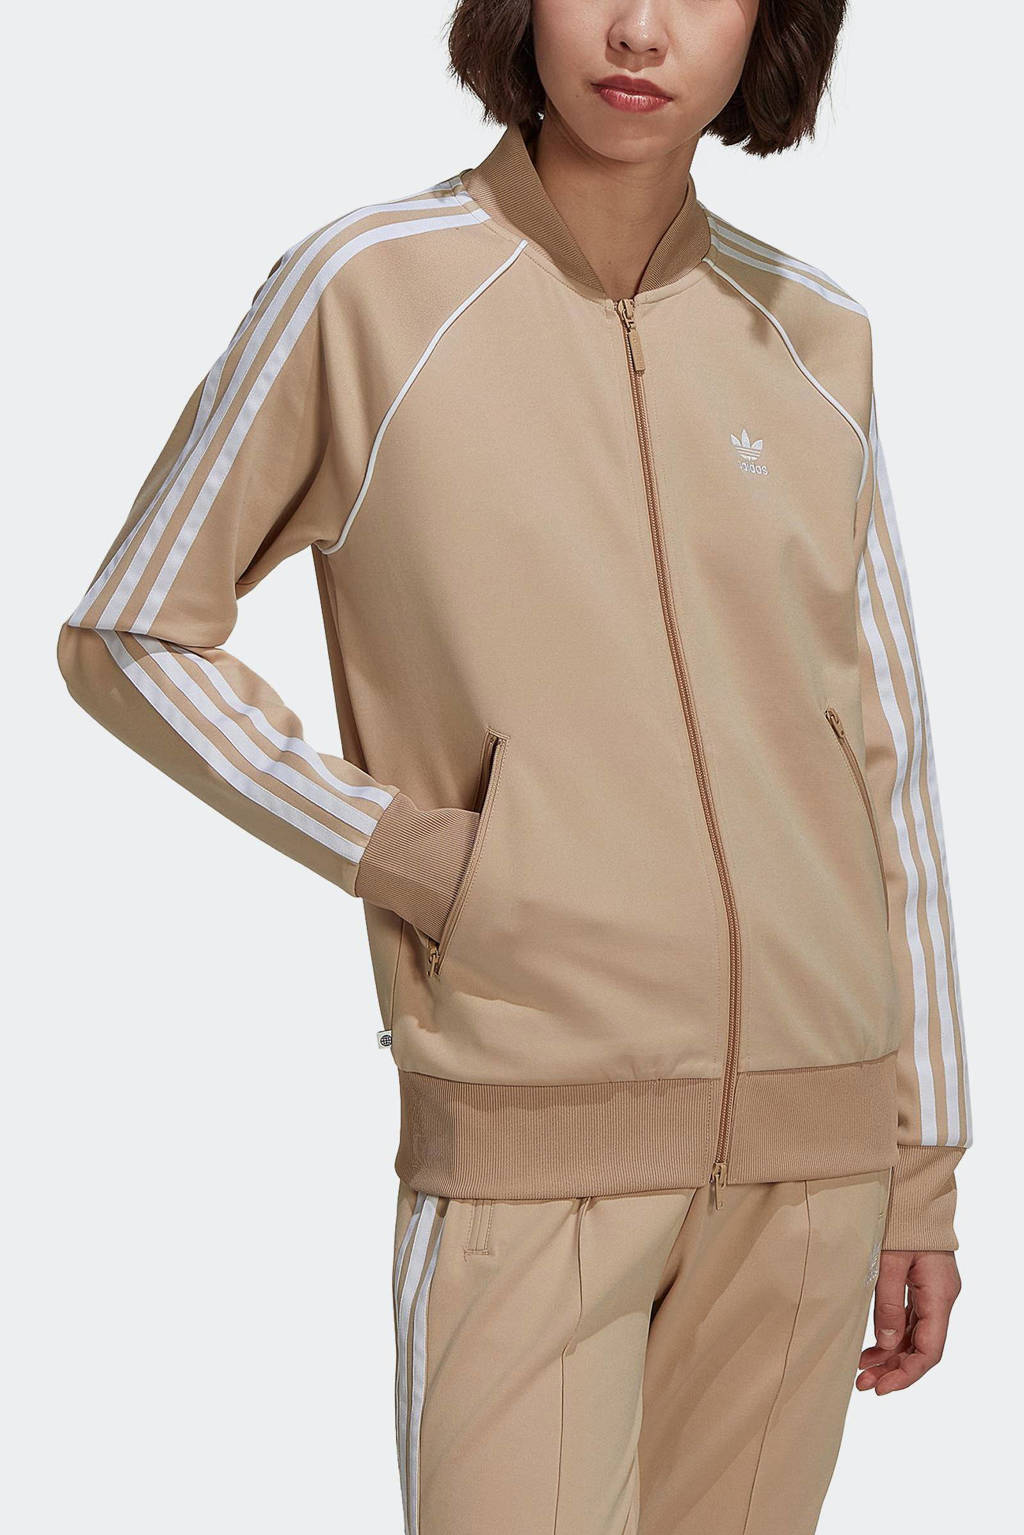 Ontslag Indica vertrekken adidas Originals Superstar vest beige | wehkamp